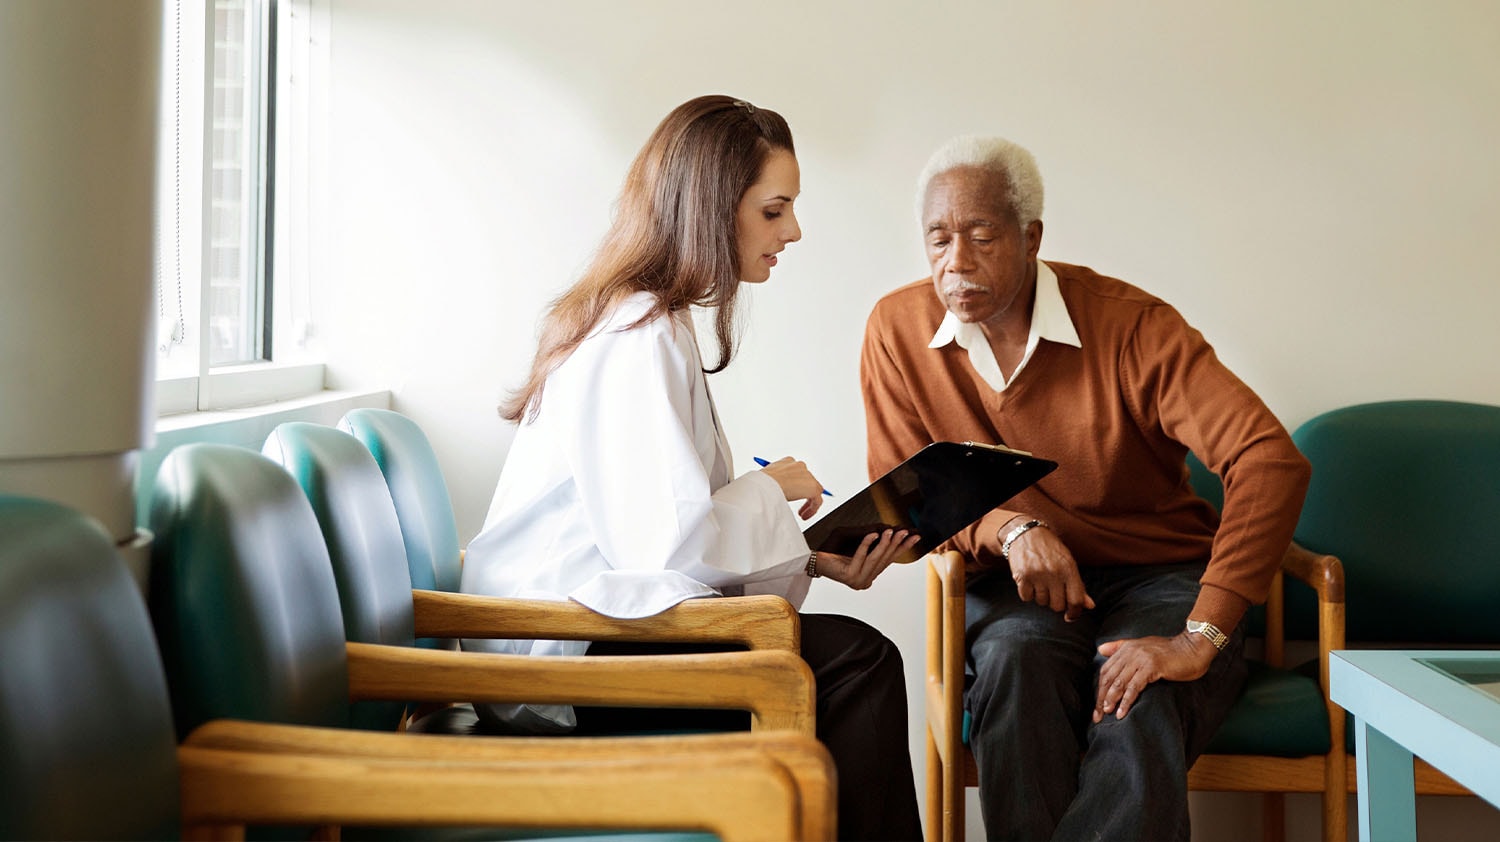 Un médico con un portapapeles discutiendo opciones con un paciente